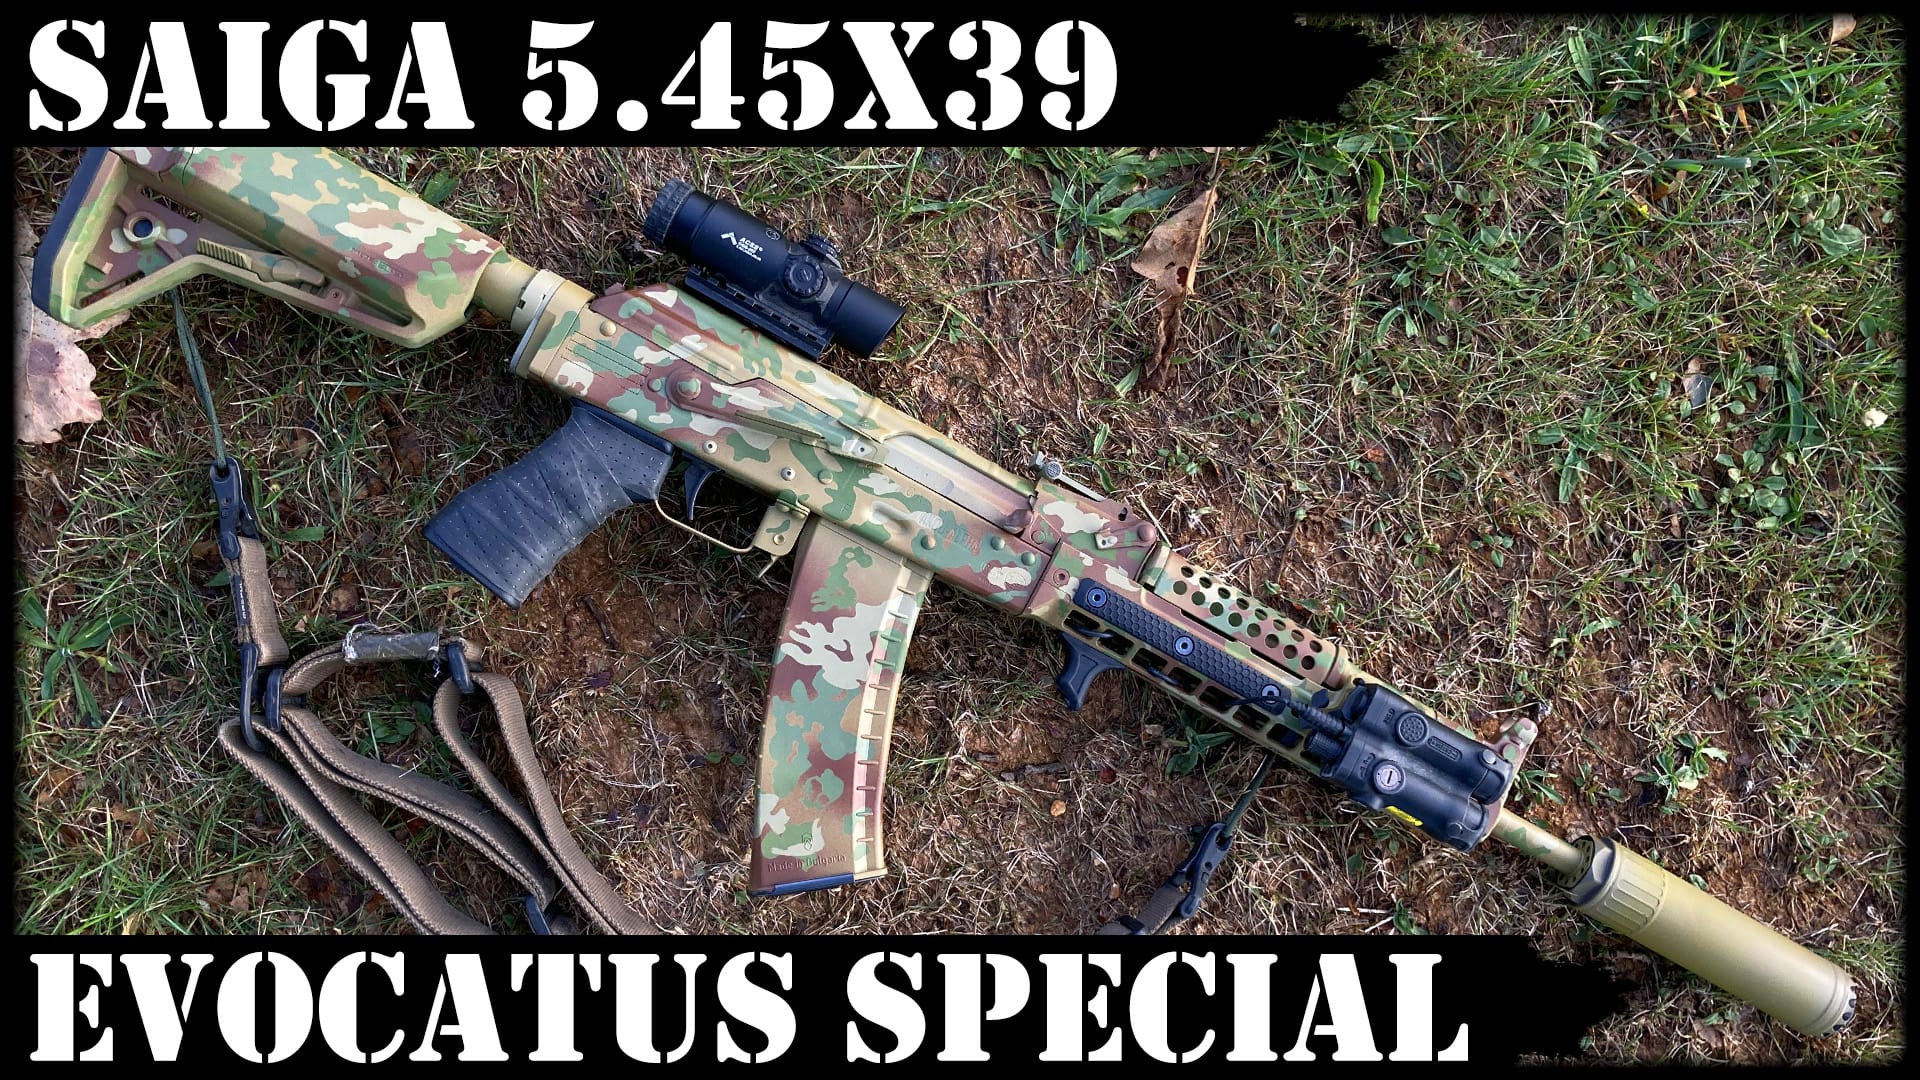 Saiga 5.45×39 – Evocatus Special! Wow!